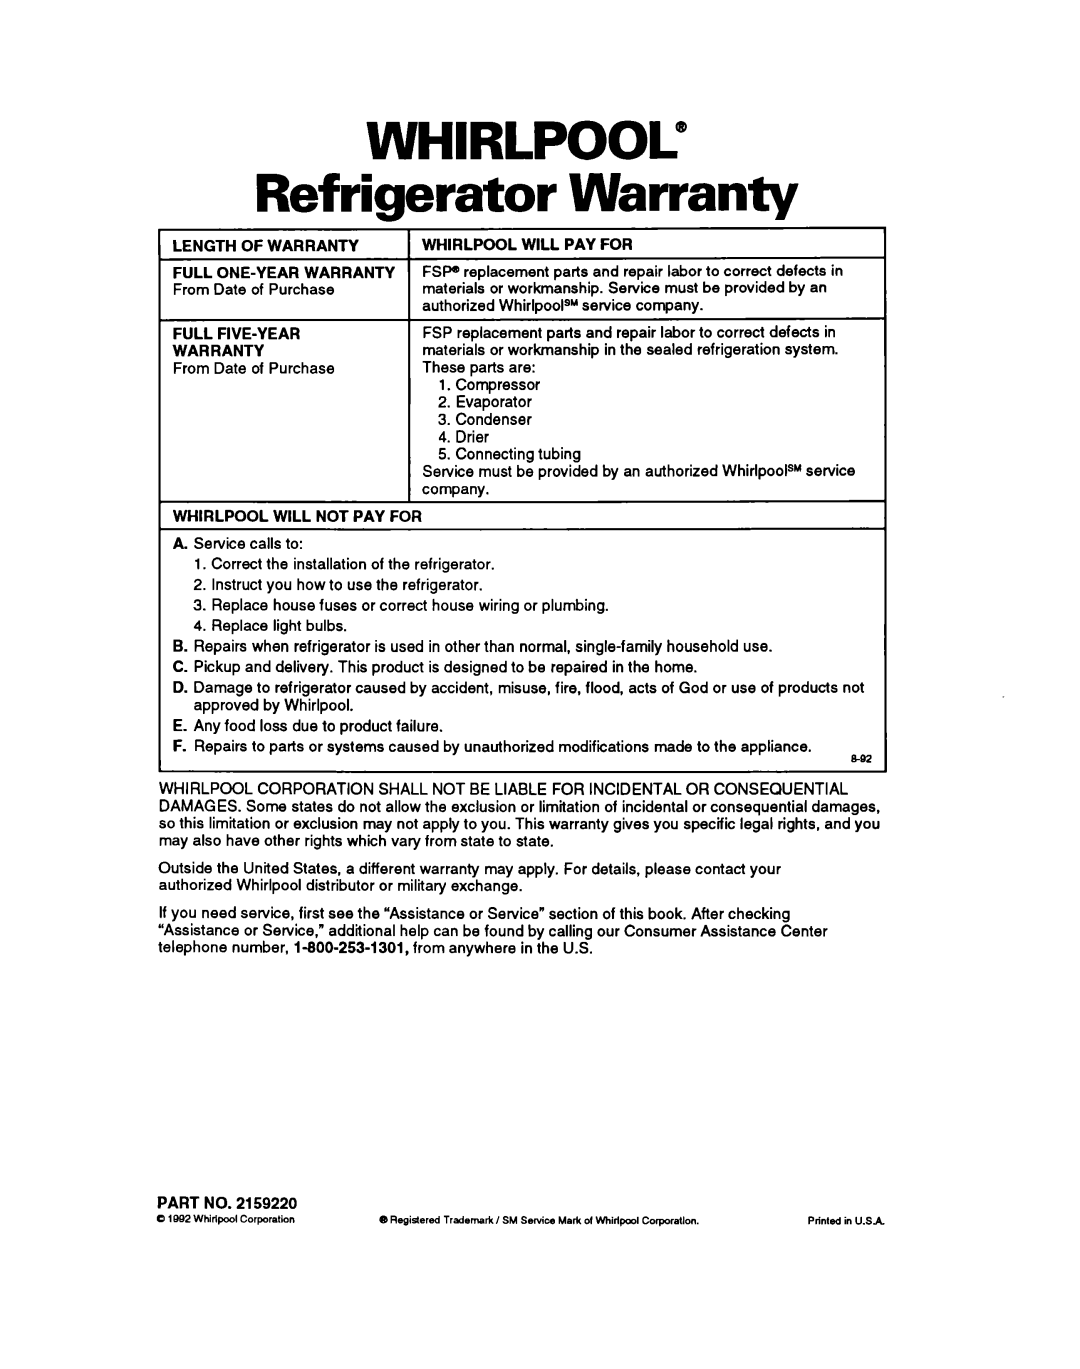 Whirlpool ETl8YK warranty WHIRLPOOL@ Refrigerator Warranty 